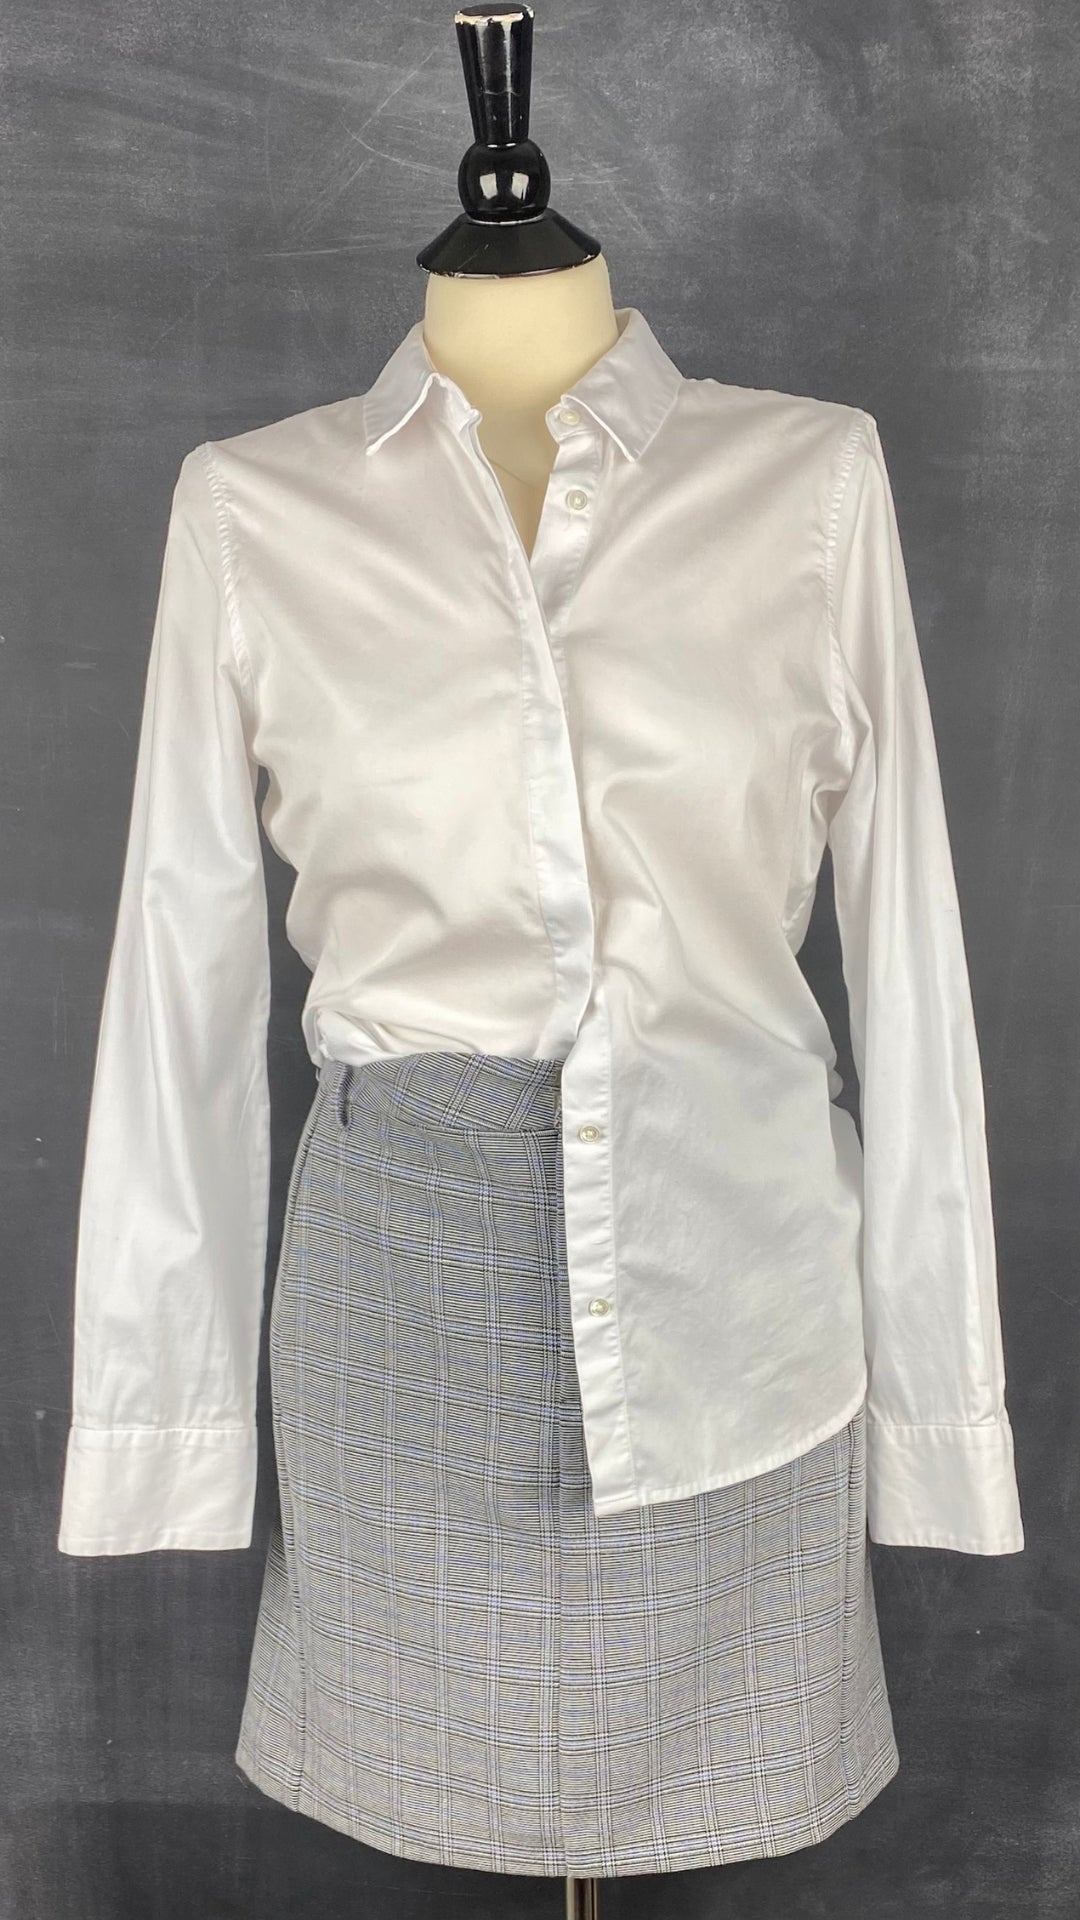 Jupe à carreaux (noir, bleu, crème) à poches Inwear, taille 6-8. Vue de l'agencement avec un chemisier blanc.